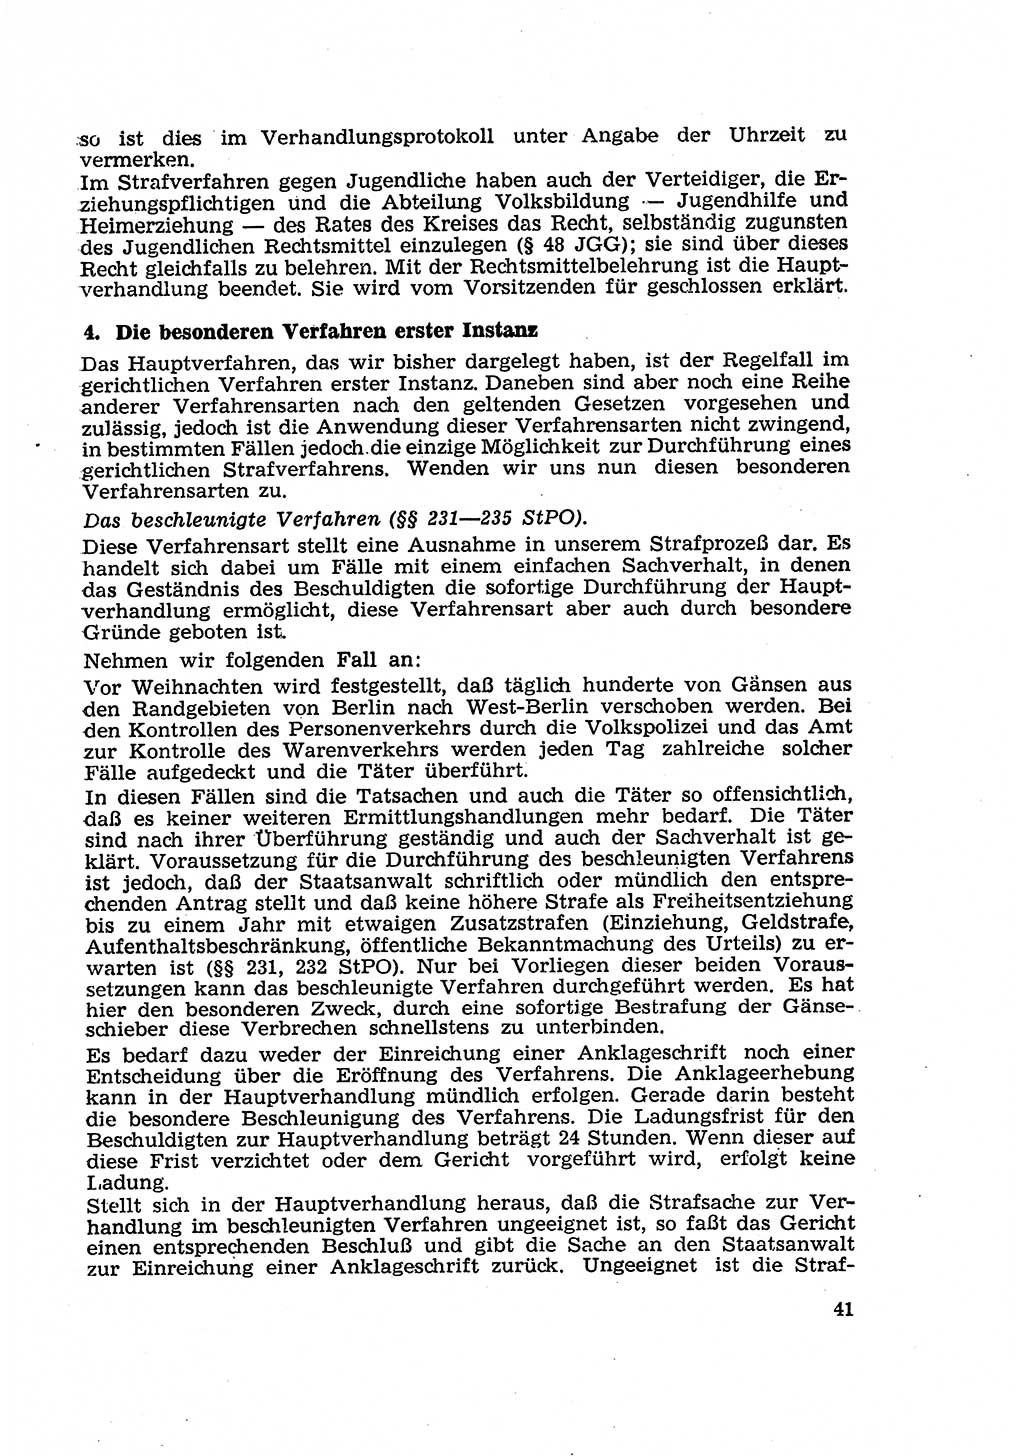 Strafverfahren in der Deutschen Demokratischen Republik (DDR) und seine demokratischen Prinzipien 1956, Seite 41 (Str.-Verf. DDR 1956, S. 41)